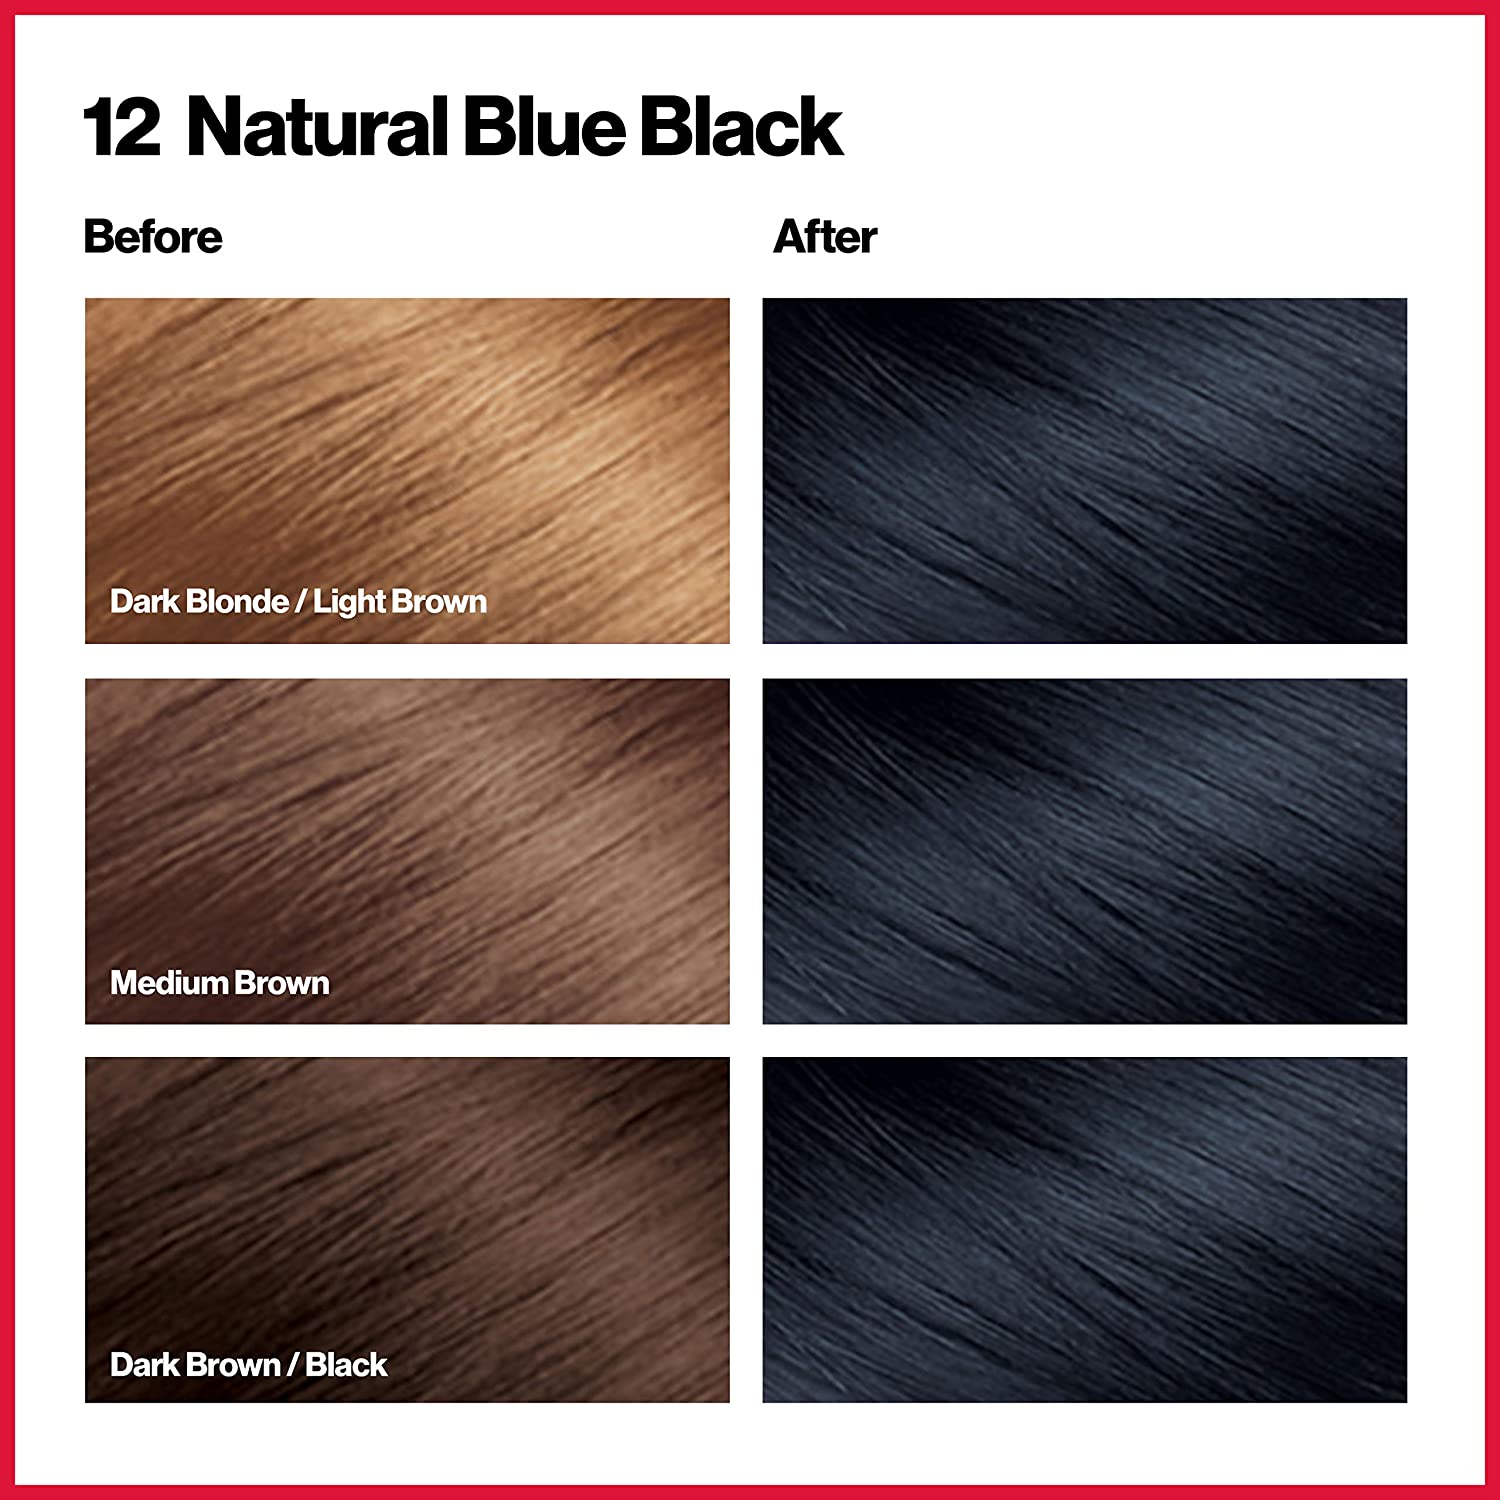 Natural Blue Black